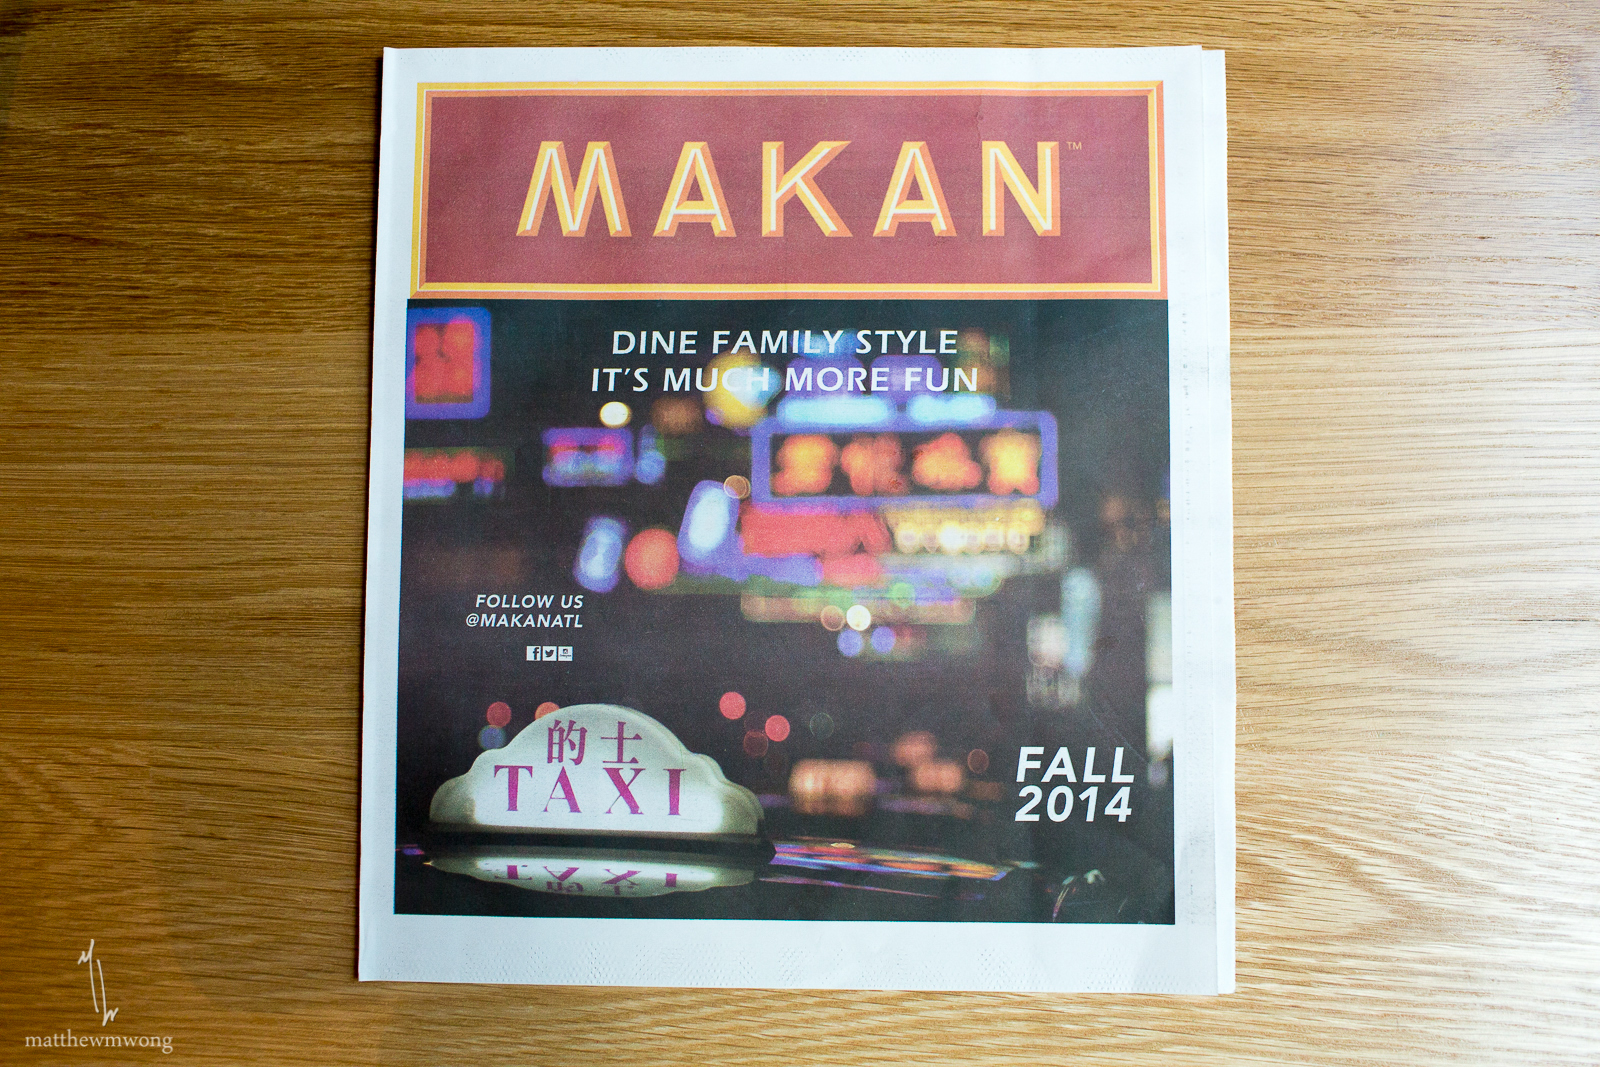 Makan's New Menu - Fall 2014!